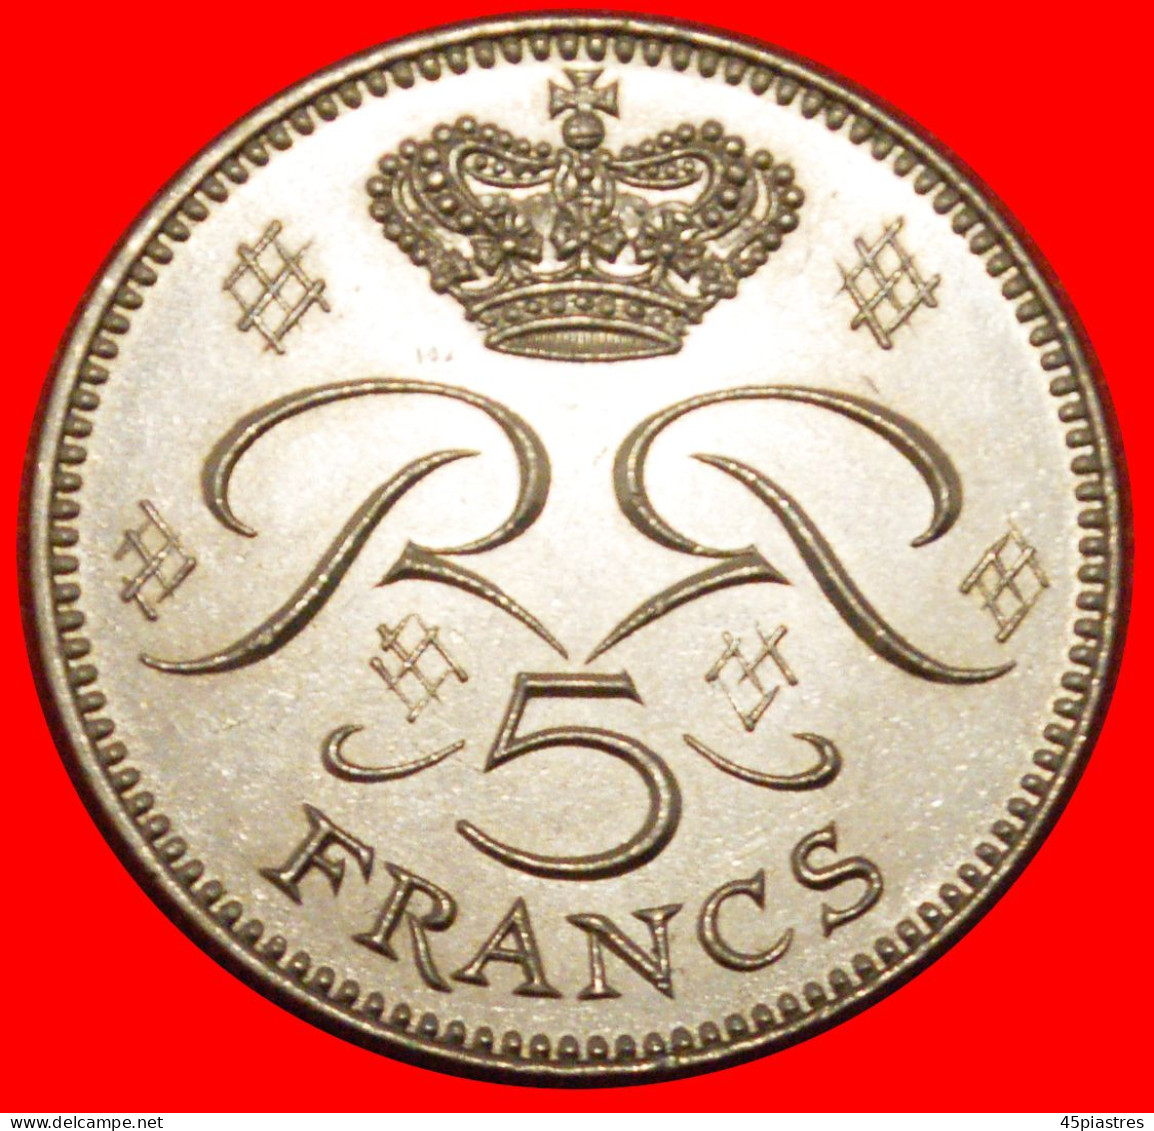 * FRANCE (1970-1995): MONACO  5 FRANCS 1976 RARE RAINIER III (1949-2005) UNC MINT LUSTRE! · LOW START ·  NO RESERVE! - 1960-2001 Nouveaux Francs